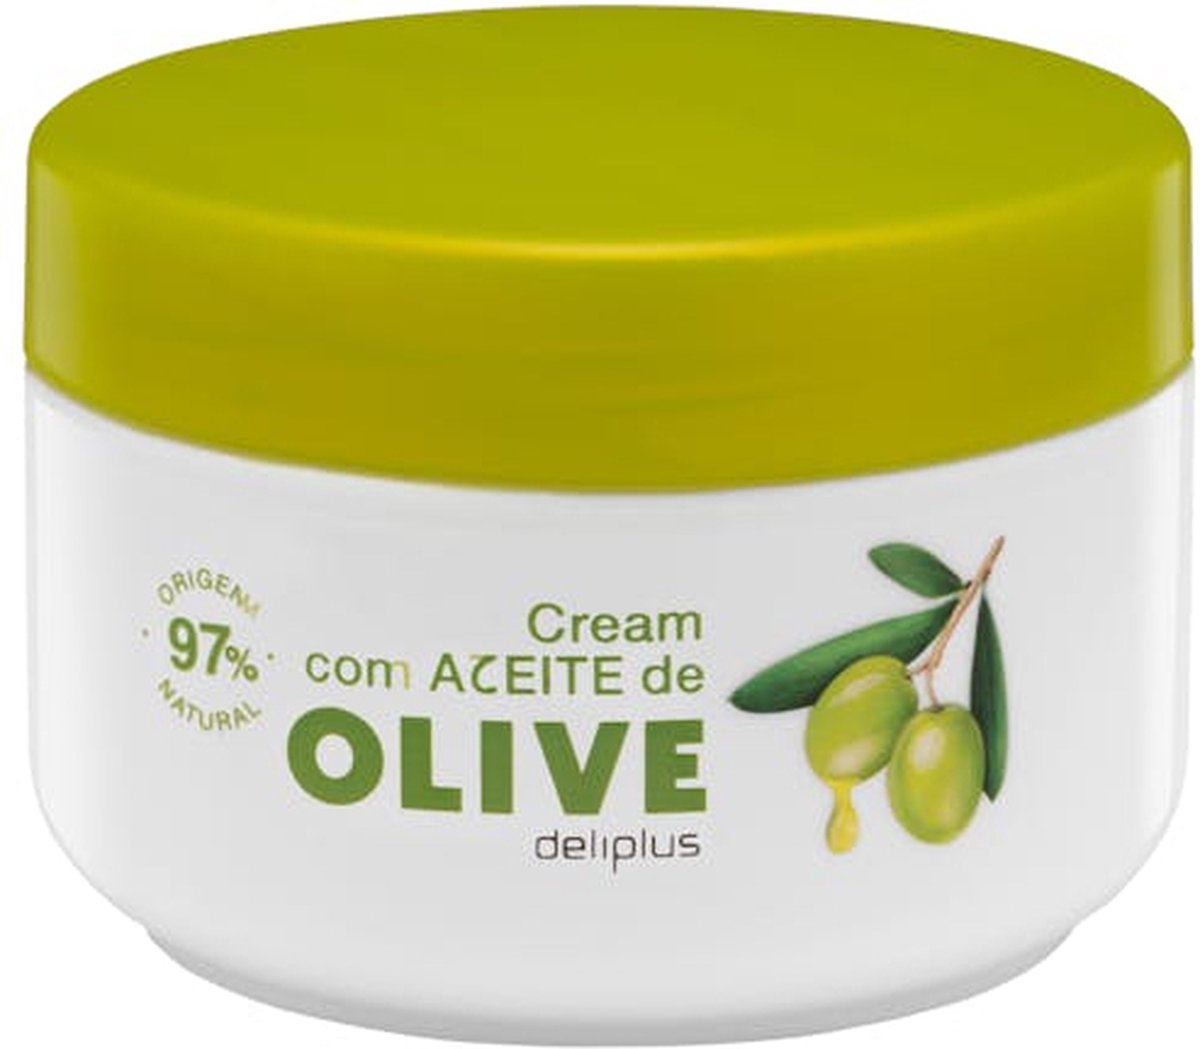 2 potten van 250ml Body Cream 97% Bodycrème natuurlijke Olijfolie uit Spanje. INTENS HYDRATERENDE